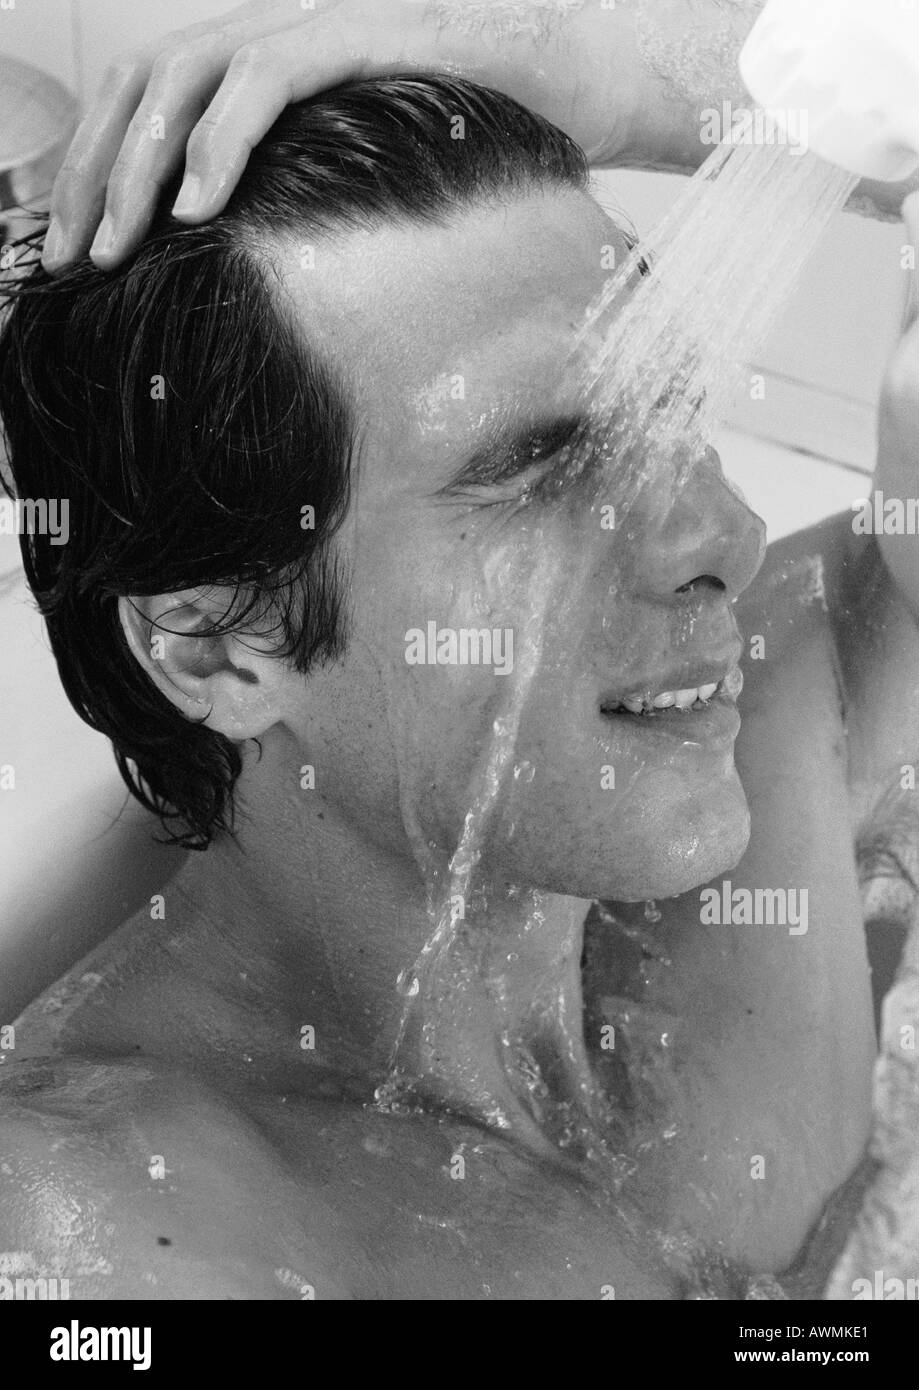 L'homme dans une baignoire, le rinçage du visage, b&w Banque D'Images